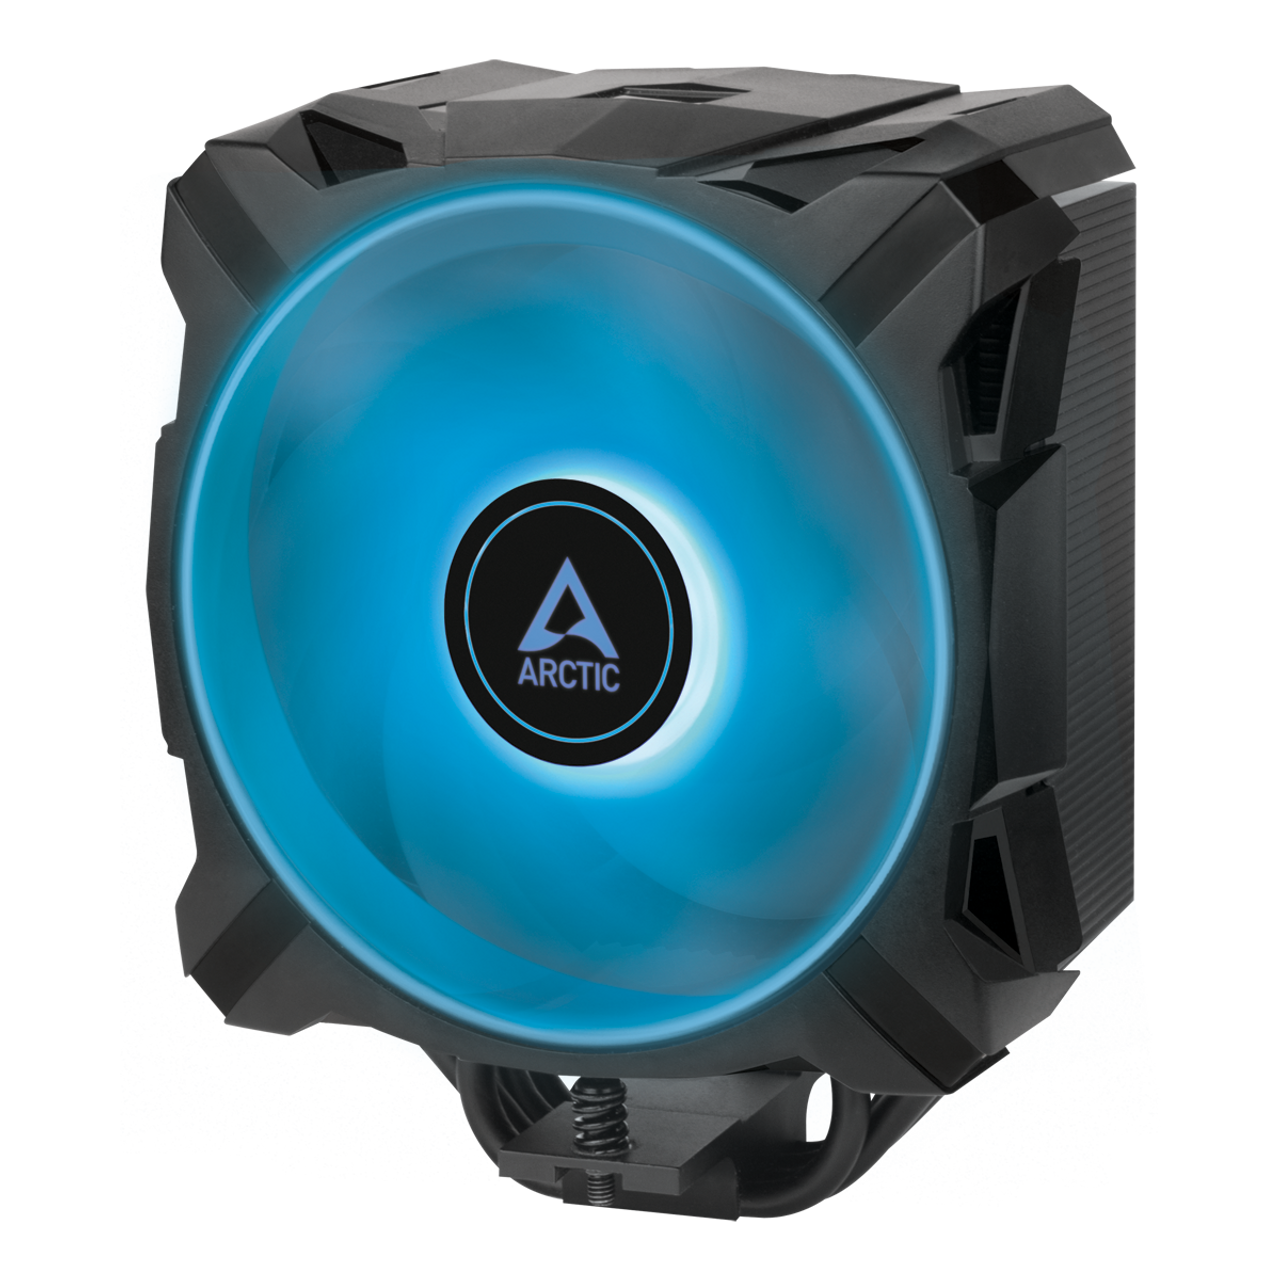 Arctic ACFRE00114A Freezer A35 RGB - CPU Cooler w RGB, AMD, Pressure optimized 120 mm 200-1700 RPM (Black)